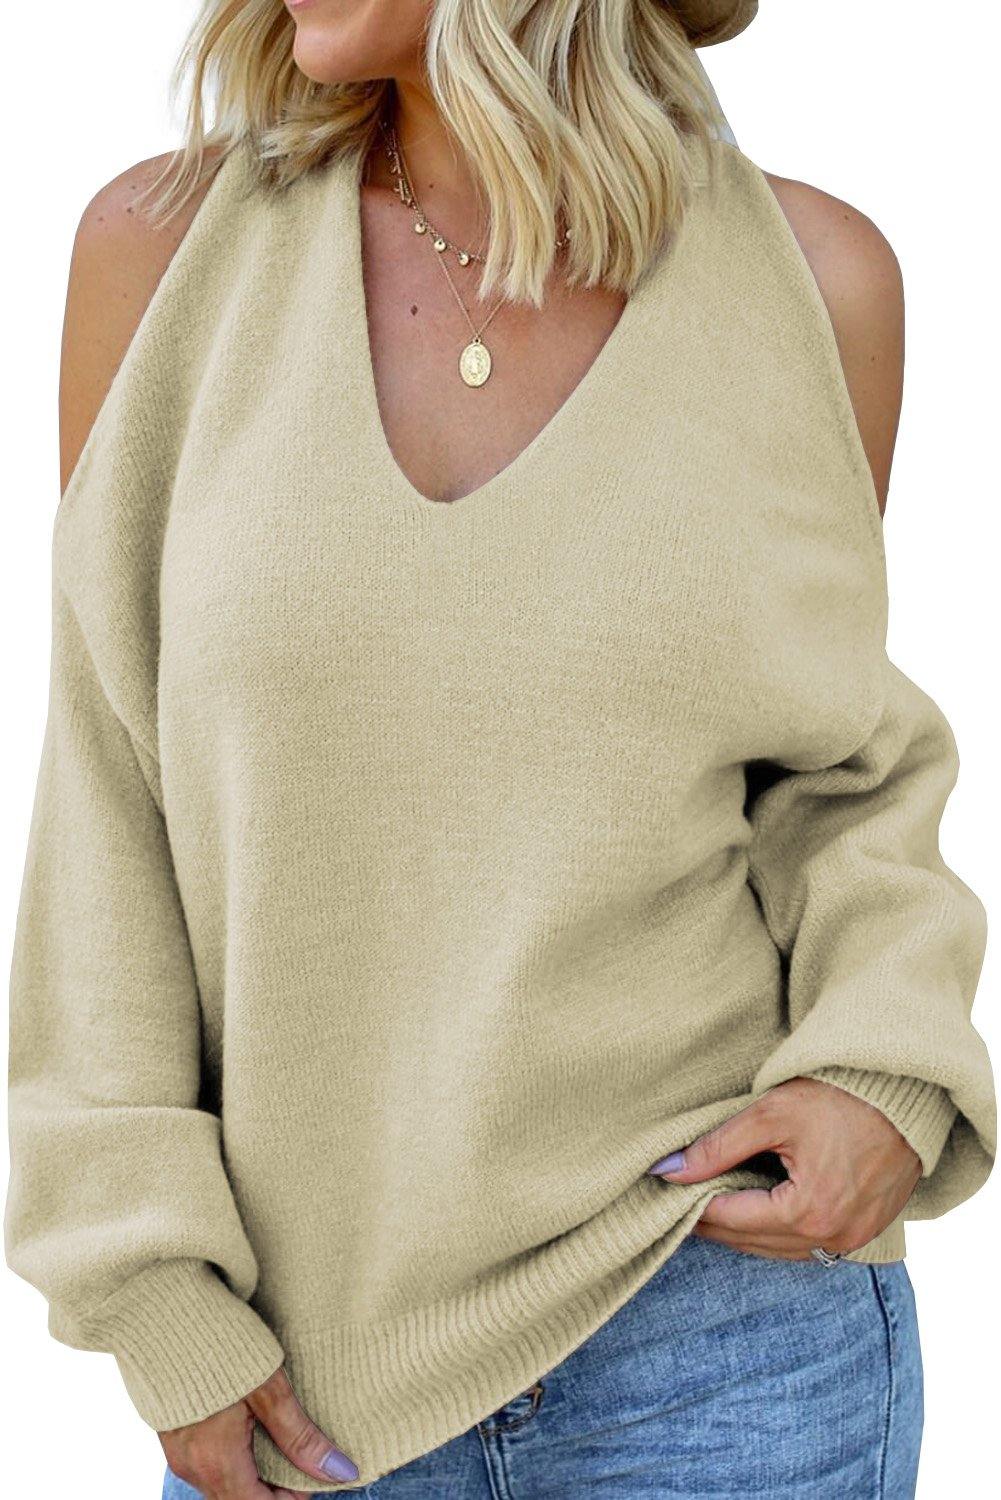 V Neck Twisted Back Cold Shoulder Sweater - L & M Kee, LLC